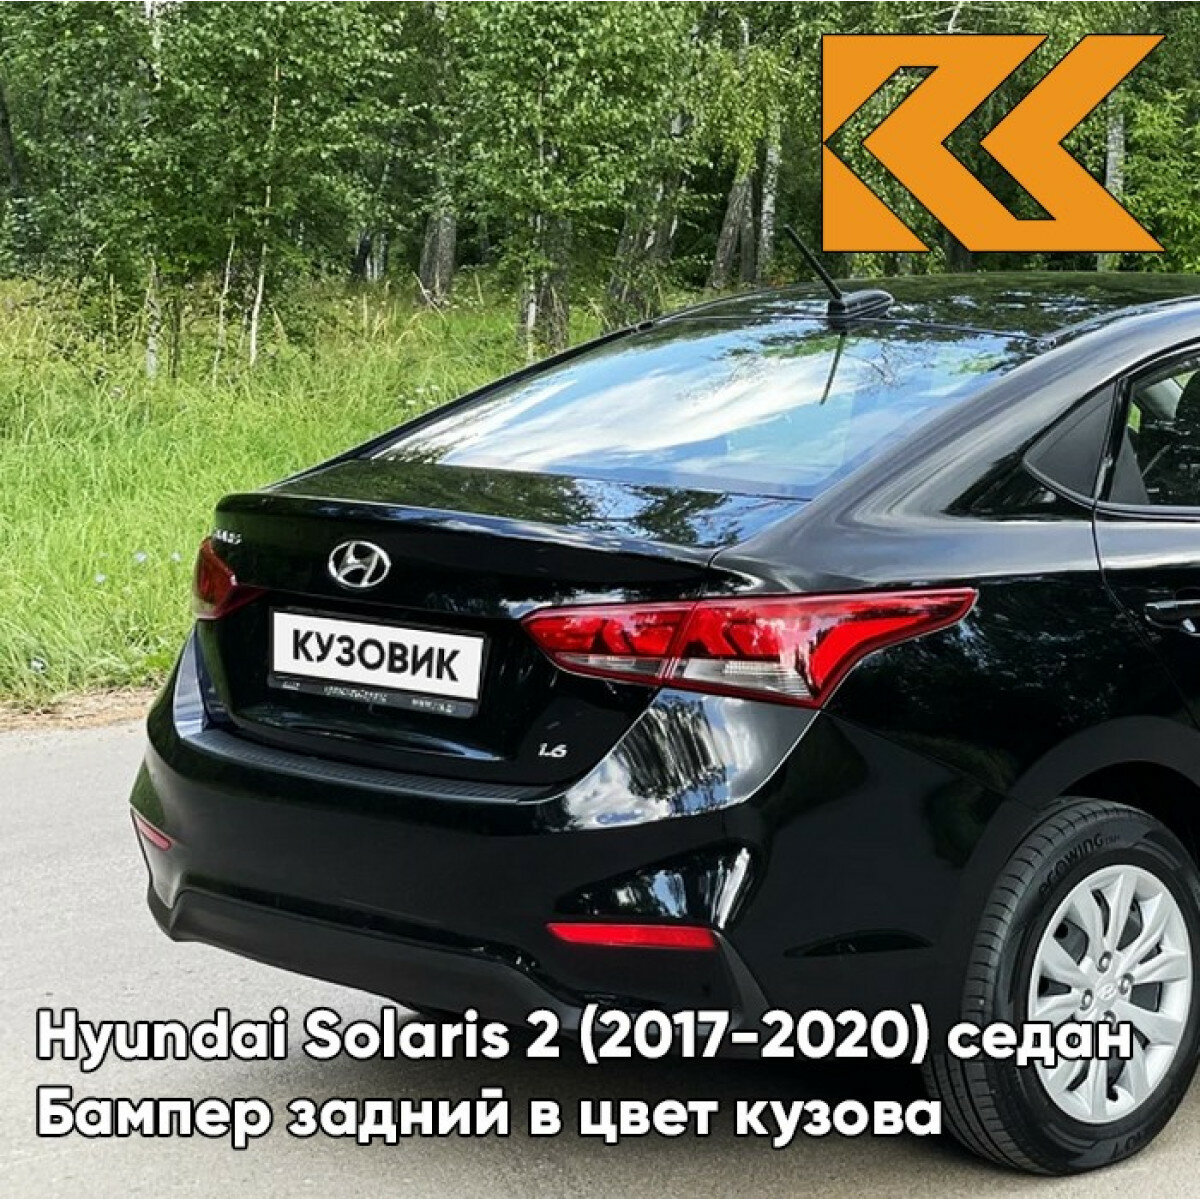 Бампер задний в цвет Hyundai Solaris 2 (2017-2020) седан MZH - PHANTOM BLACK - Чёрный